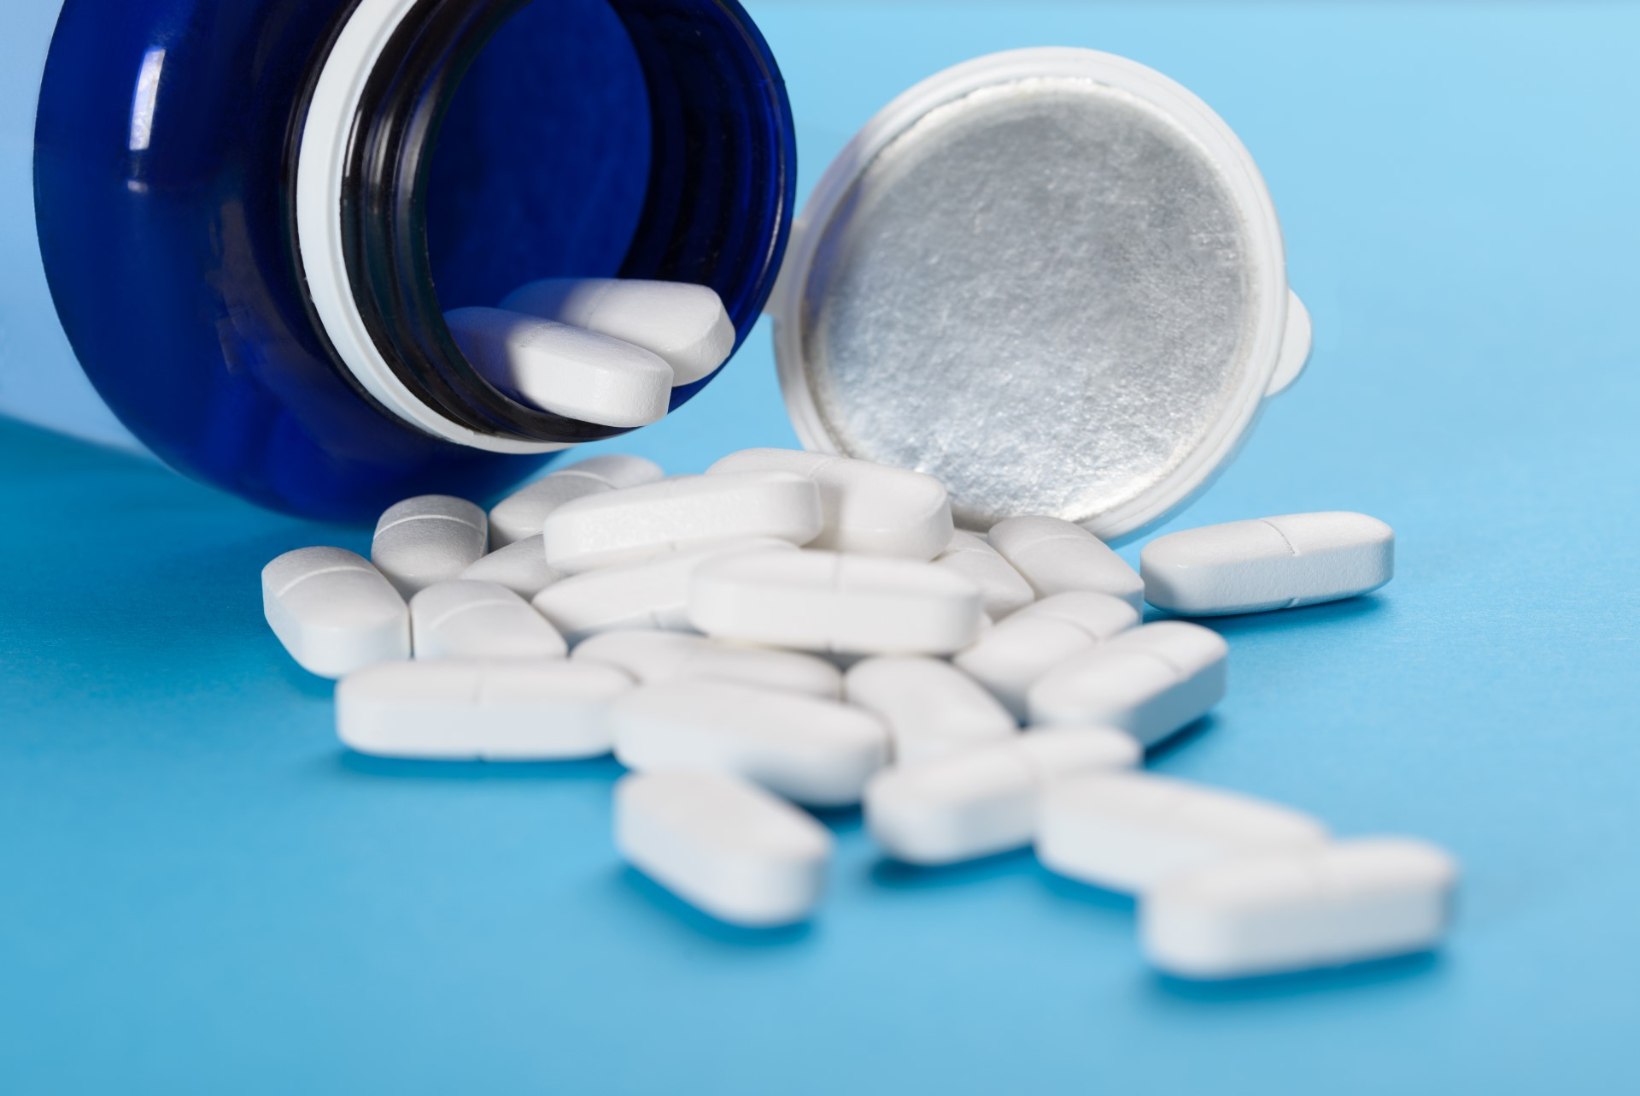 Infarktijärgset aspiriiniravi kergekäeliselt katkestada ei maksa